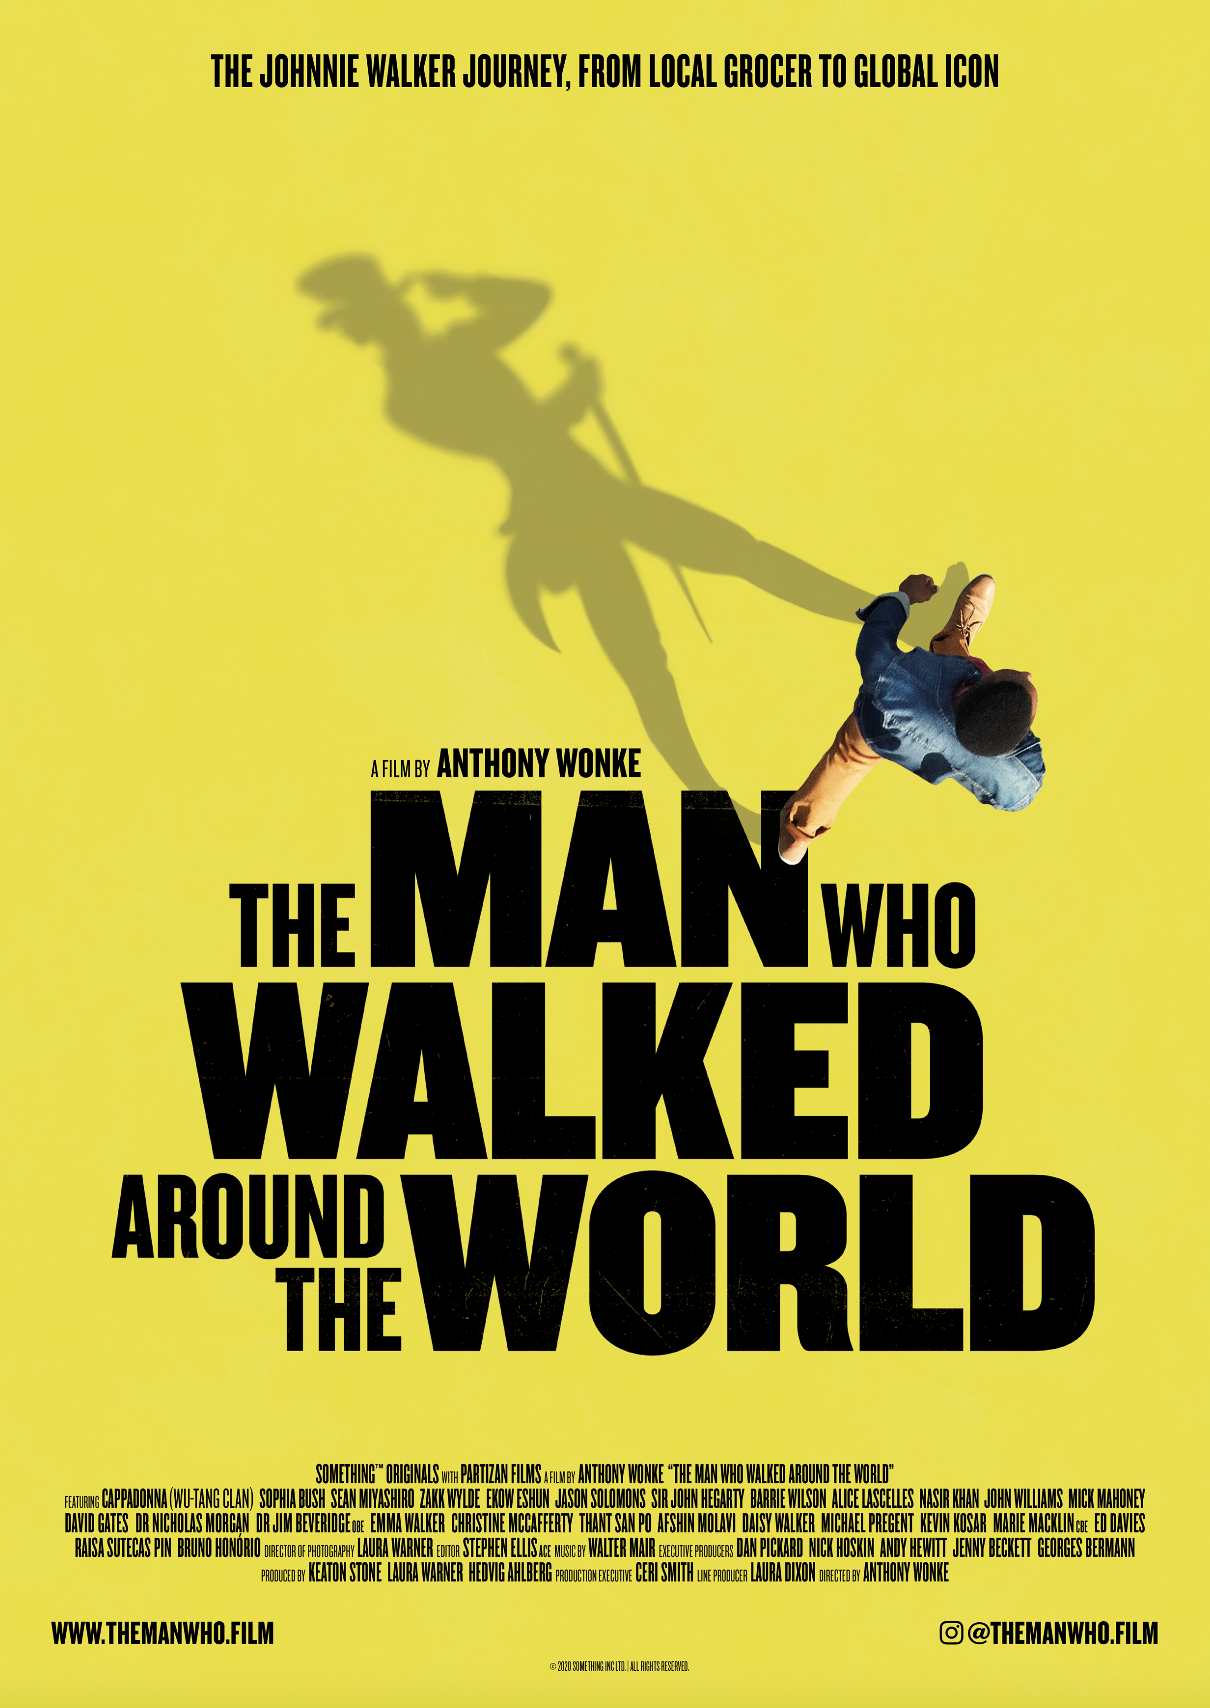 Discovery presenta “El Hombre que Recorrió el Mundo”, un documental del aclamado director Anthony Wonke acerca Johnnie Walker, que invita a mirar el futuro con esperanza